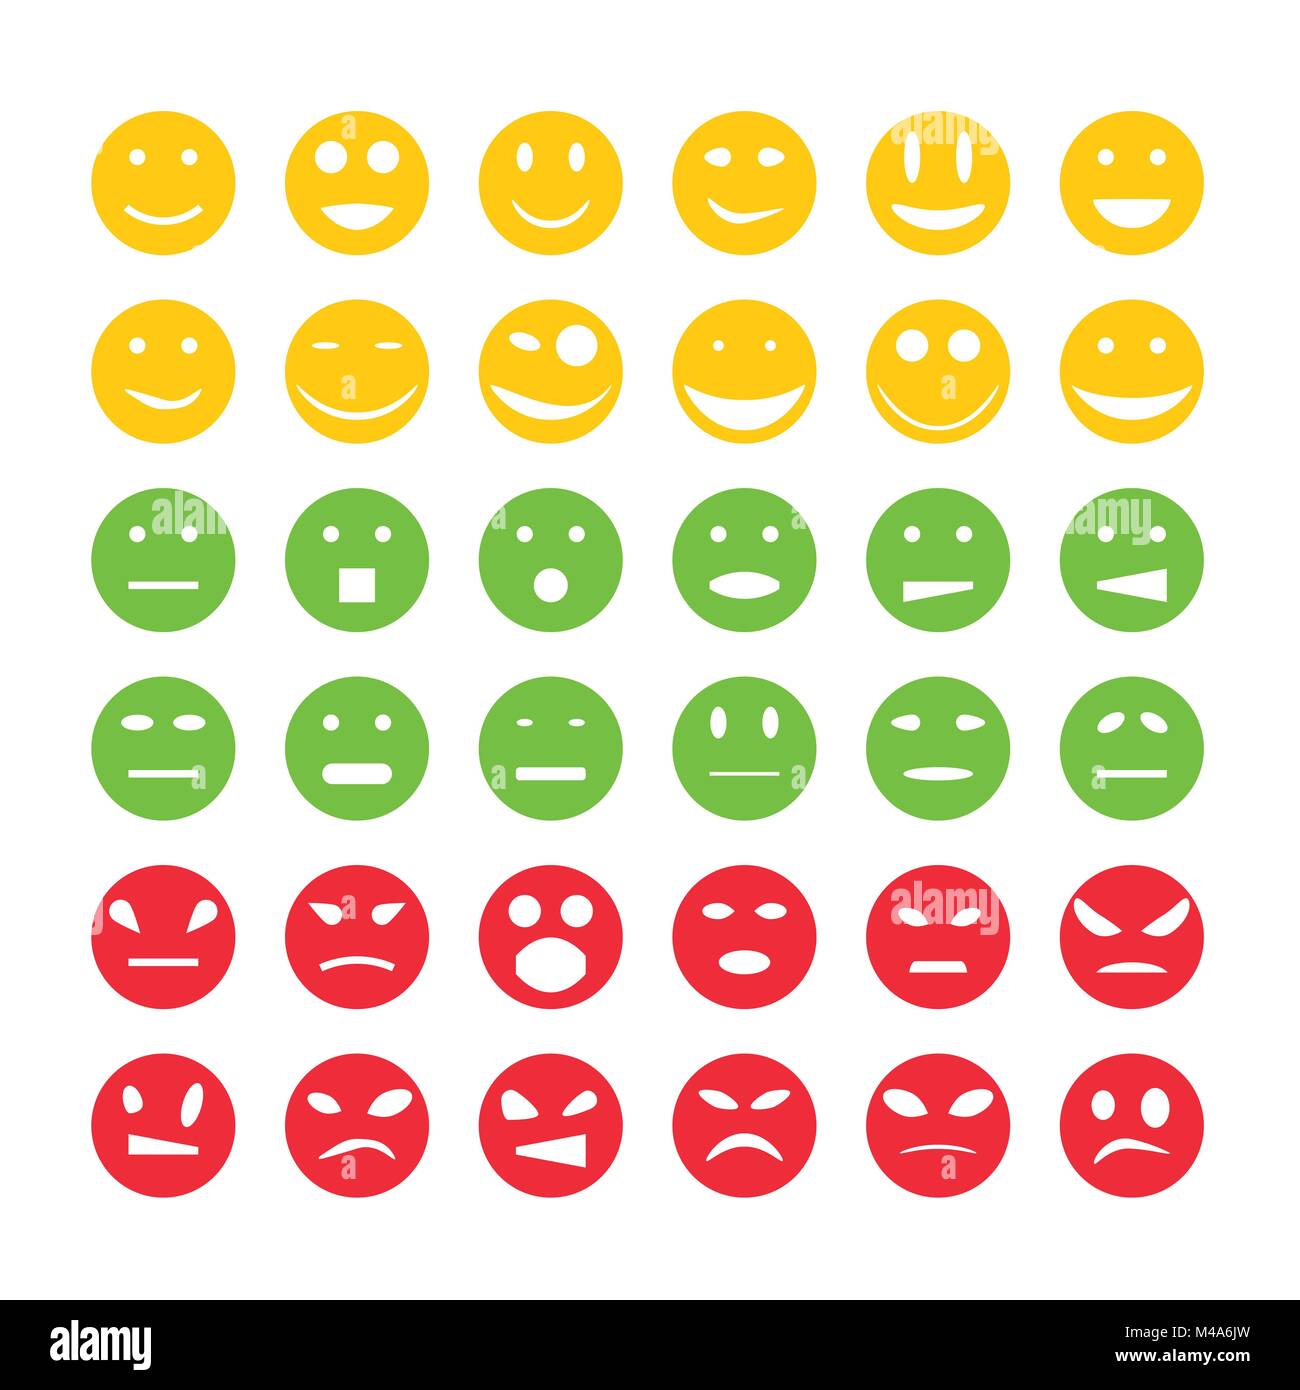 Smiley emoticon icons Stock Vector